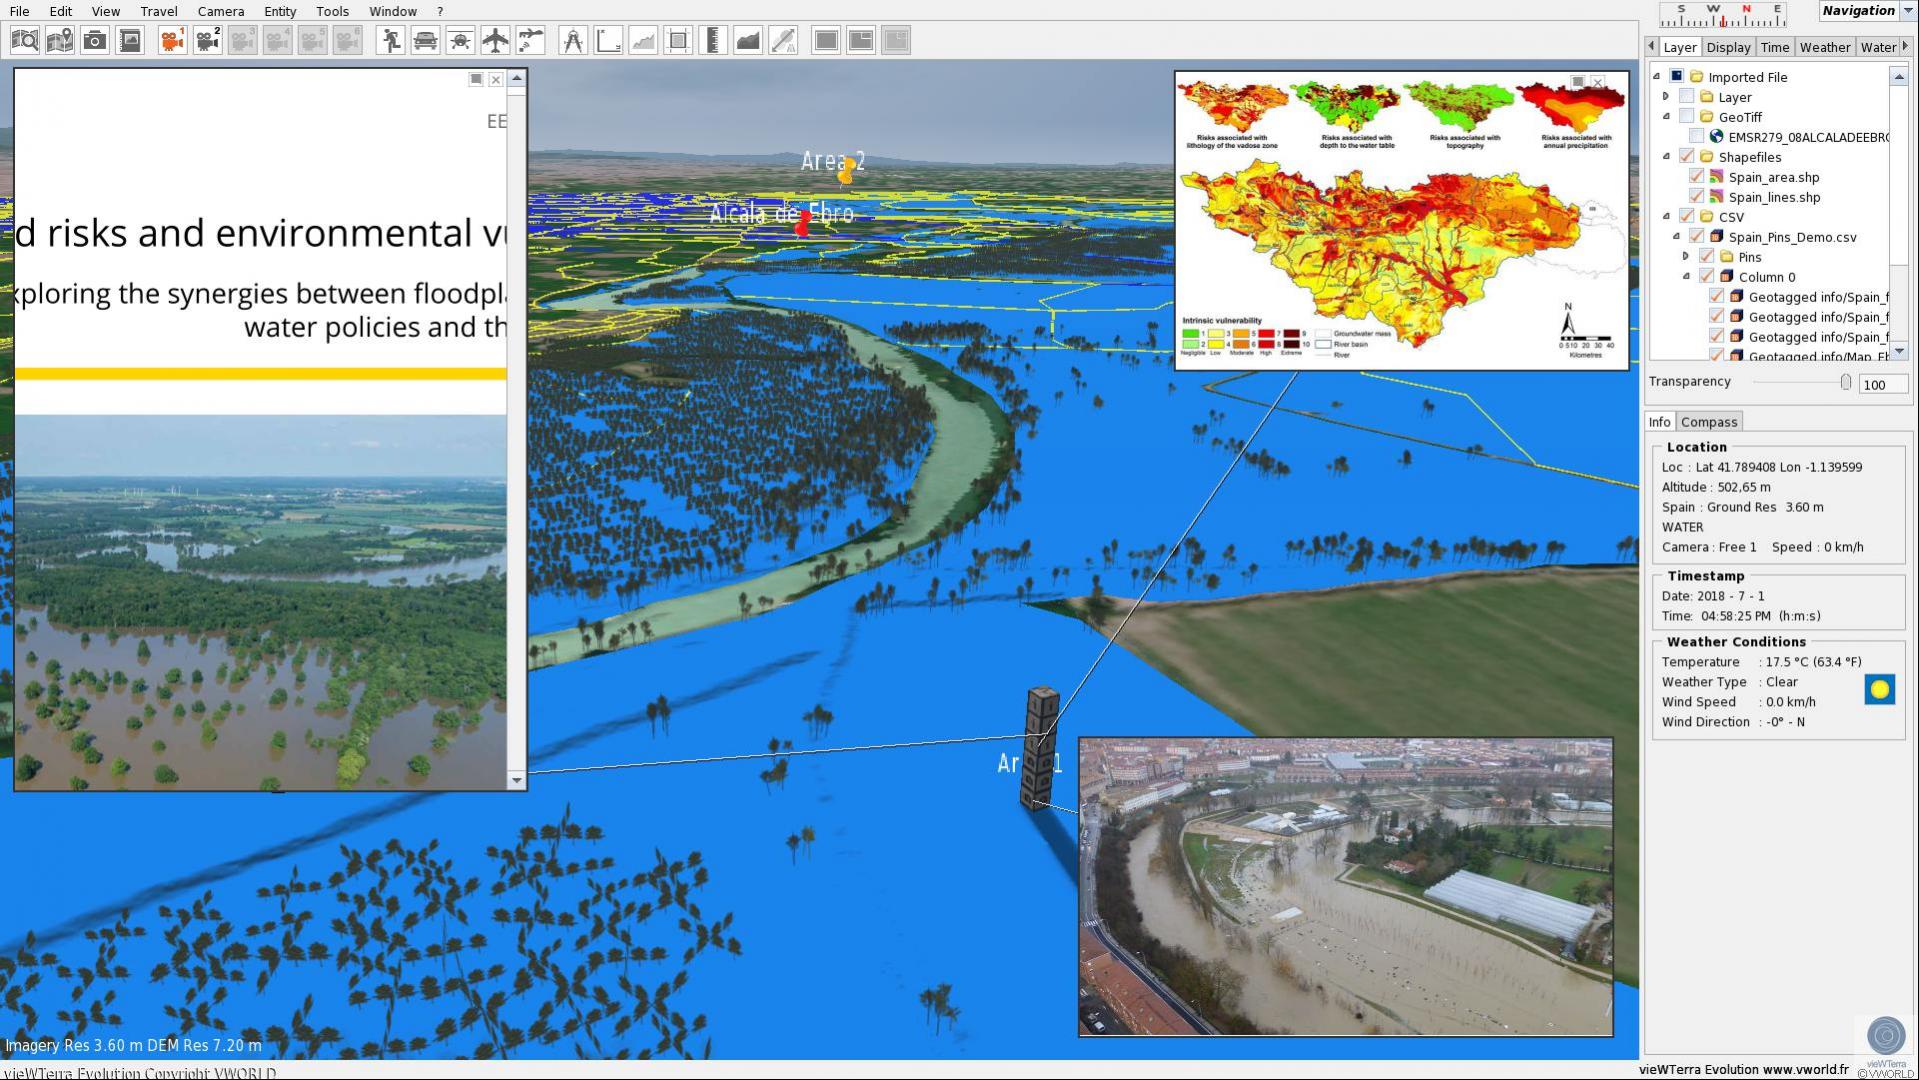 vieWTerra Evolution - Earth Viewer in 4D, piattaforma per l'integrazione e lo sviluppo di dati